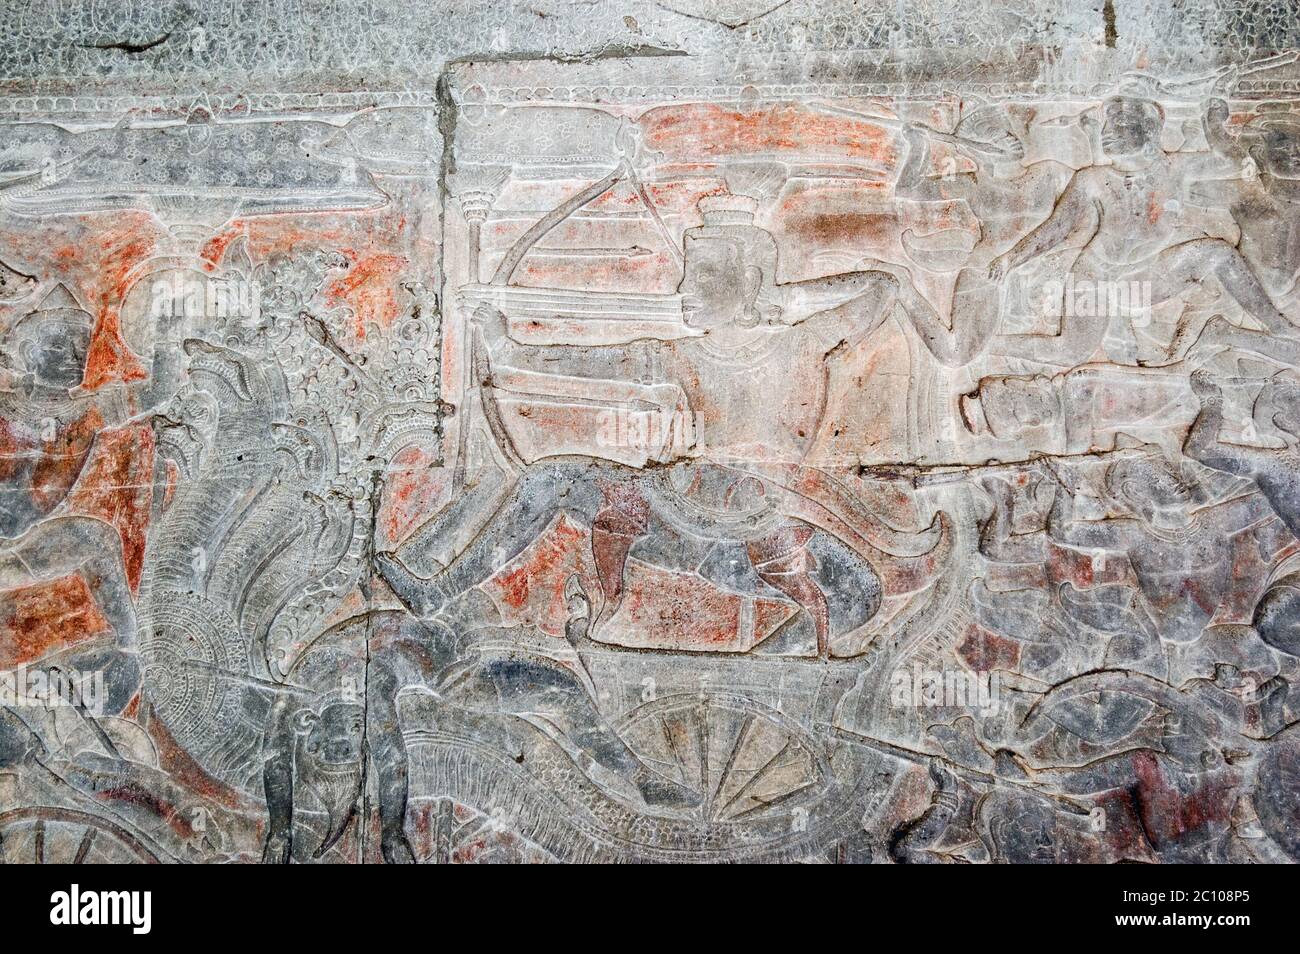 Antica scultura in bassorilievo Khmer che mostra il dio indù Shiva sparando una freccia da un carro tirato da un Naga - un dio serpente molti capeggiati. Muro di Angkor Foto Stock